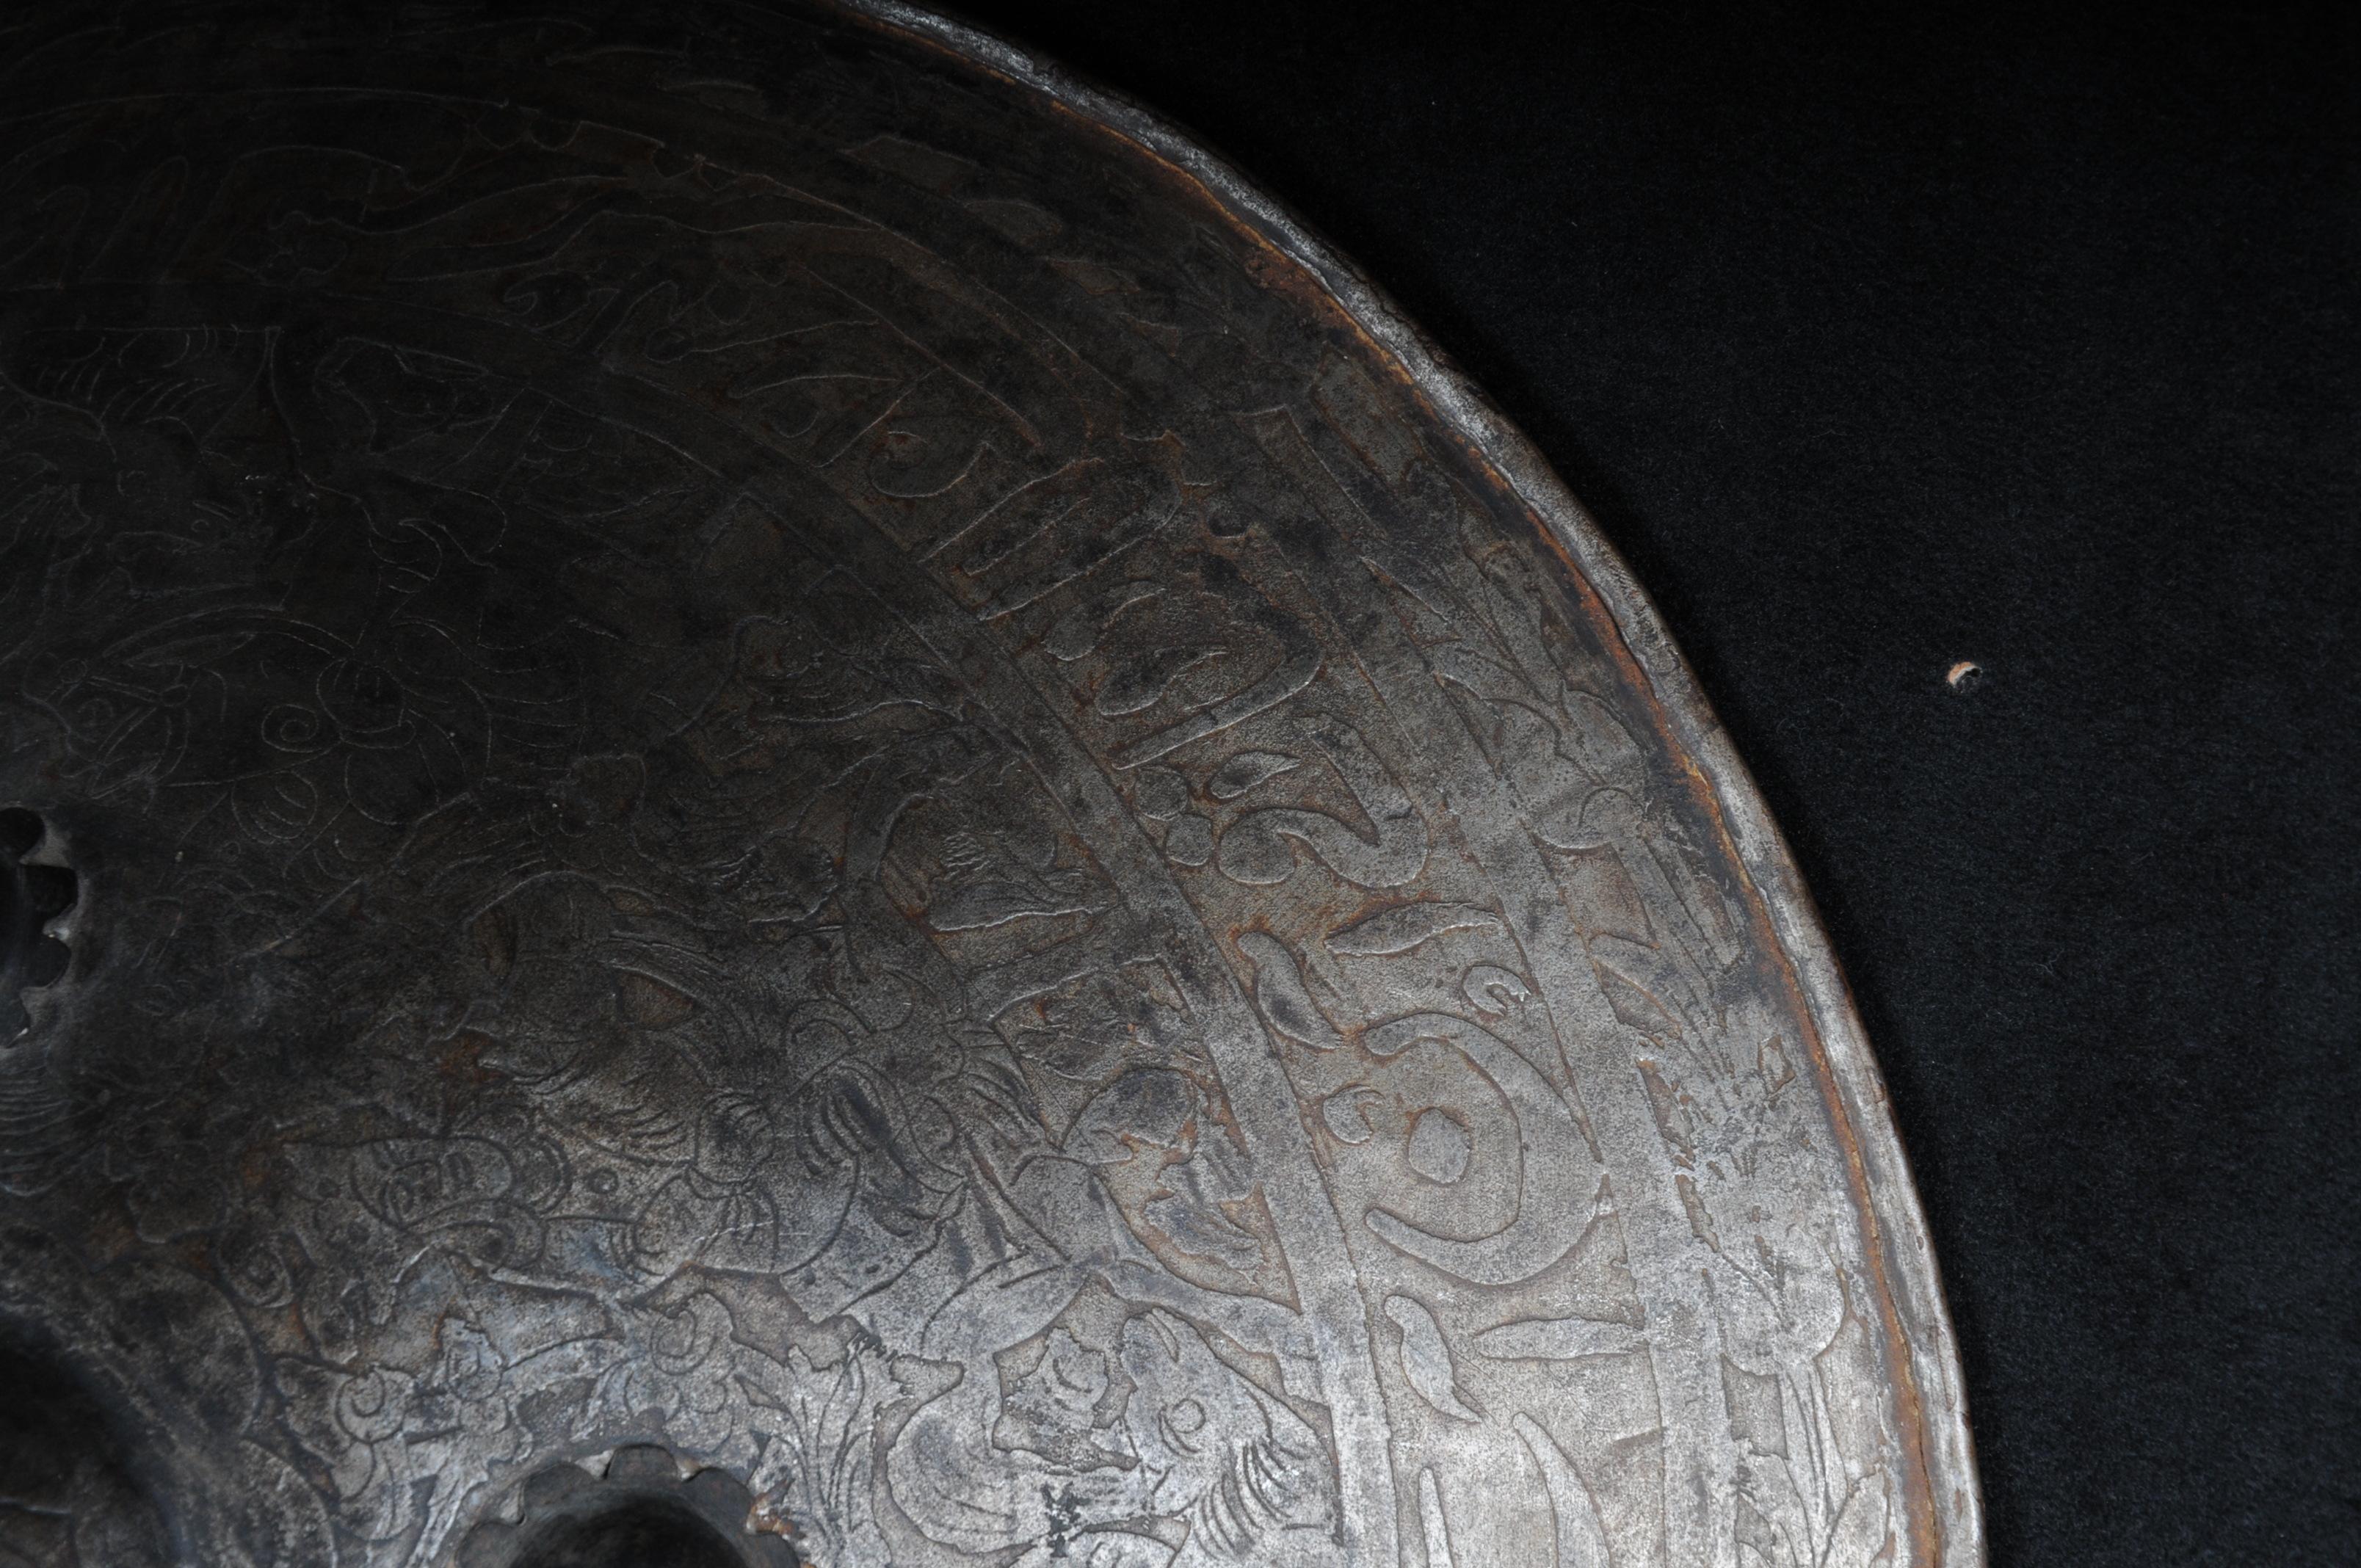 ancient persian shield